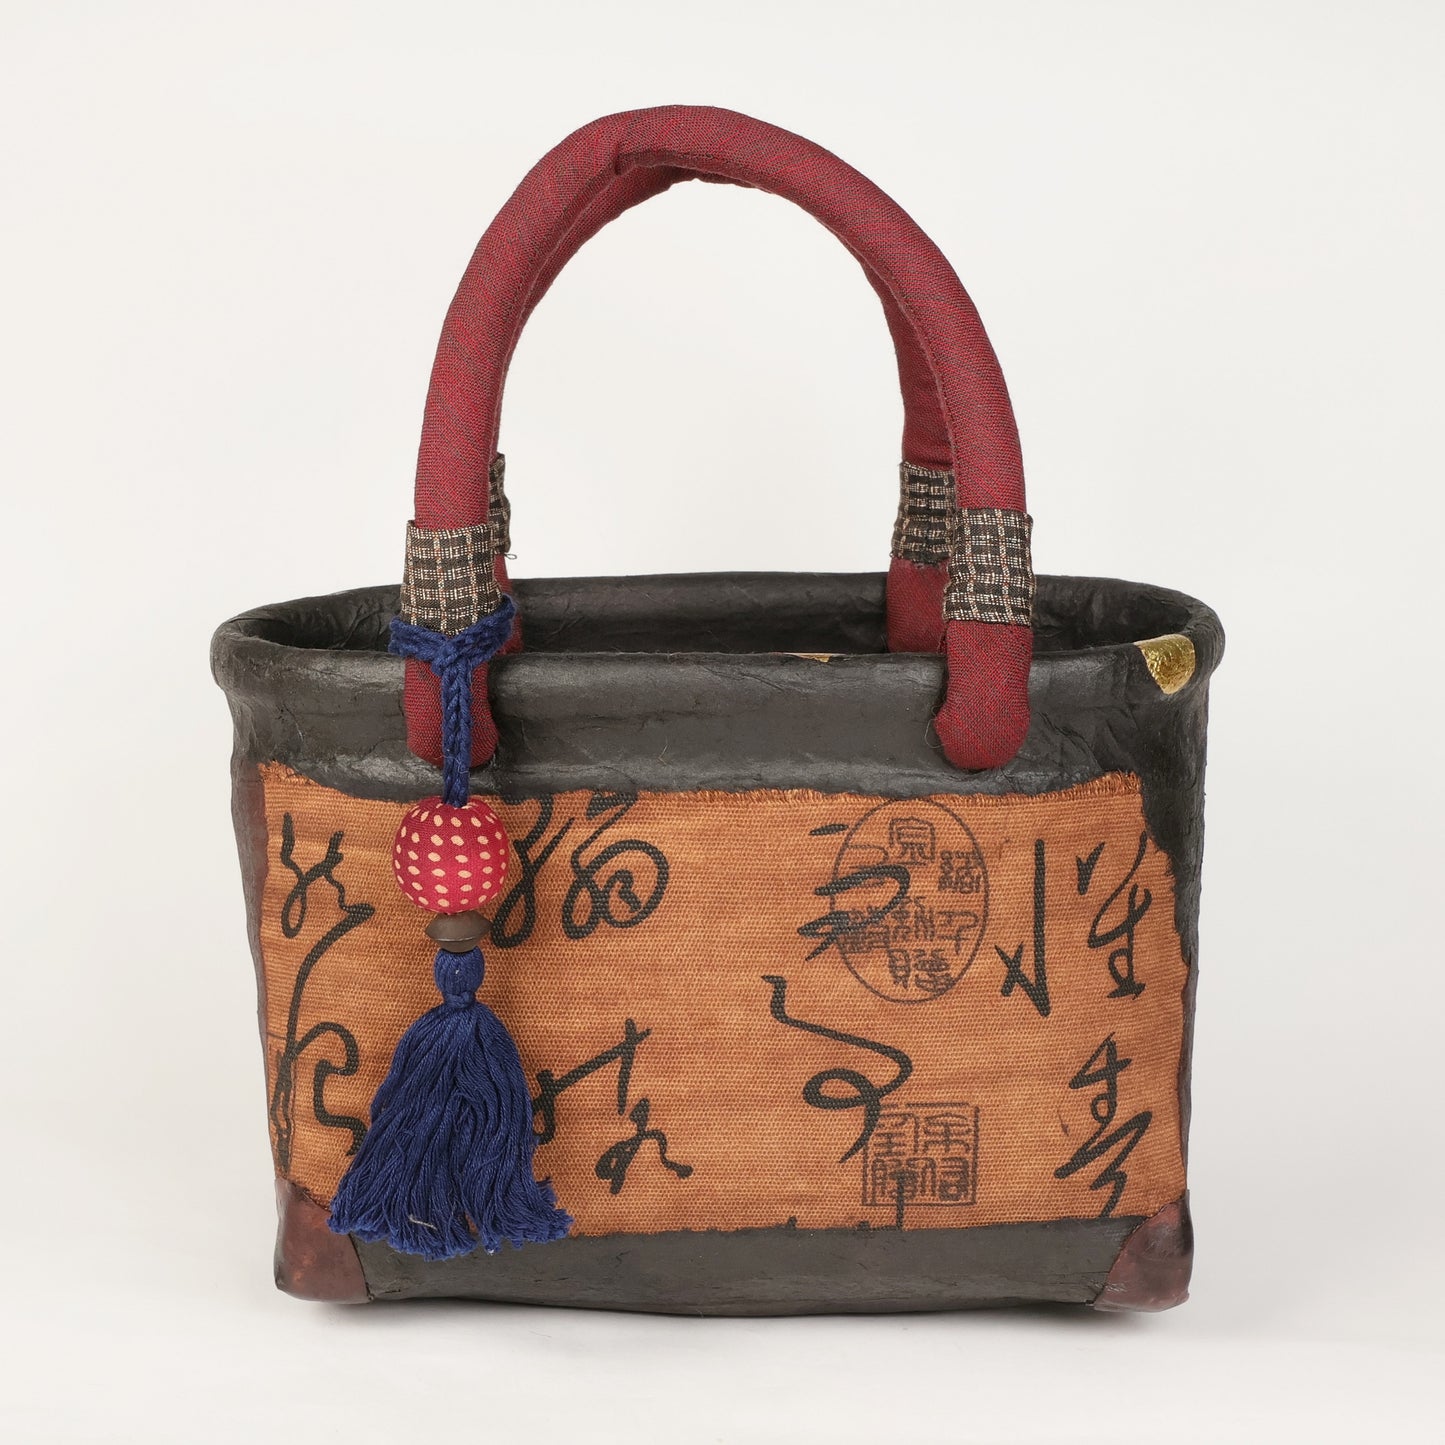 Ikkanbari, Traditional Japanese bag, Ikkanbari bag, Handmade Japanese bag, kimono bag, Japanese basket, Camellia pattern Japanese basket, Free Shipping